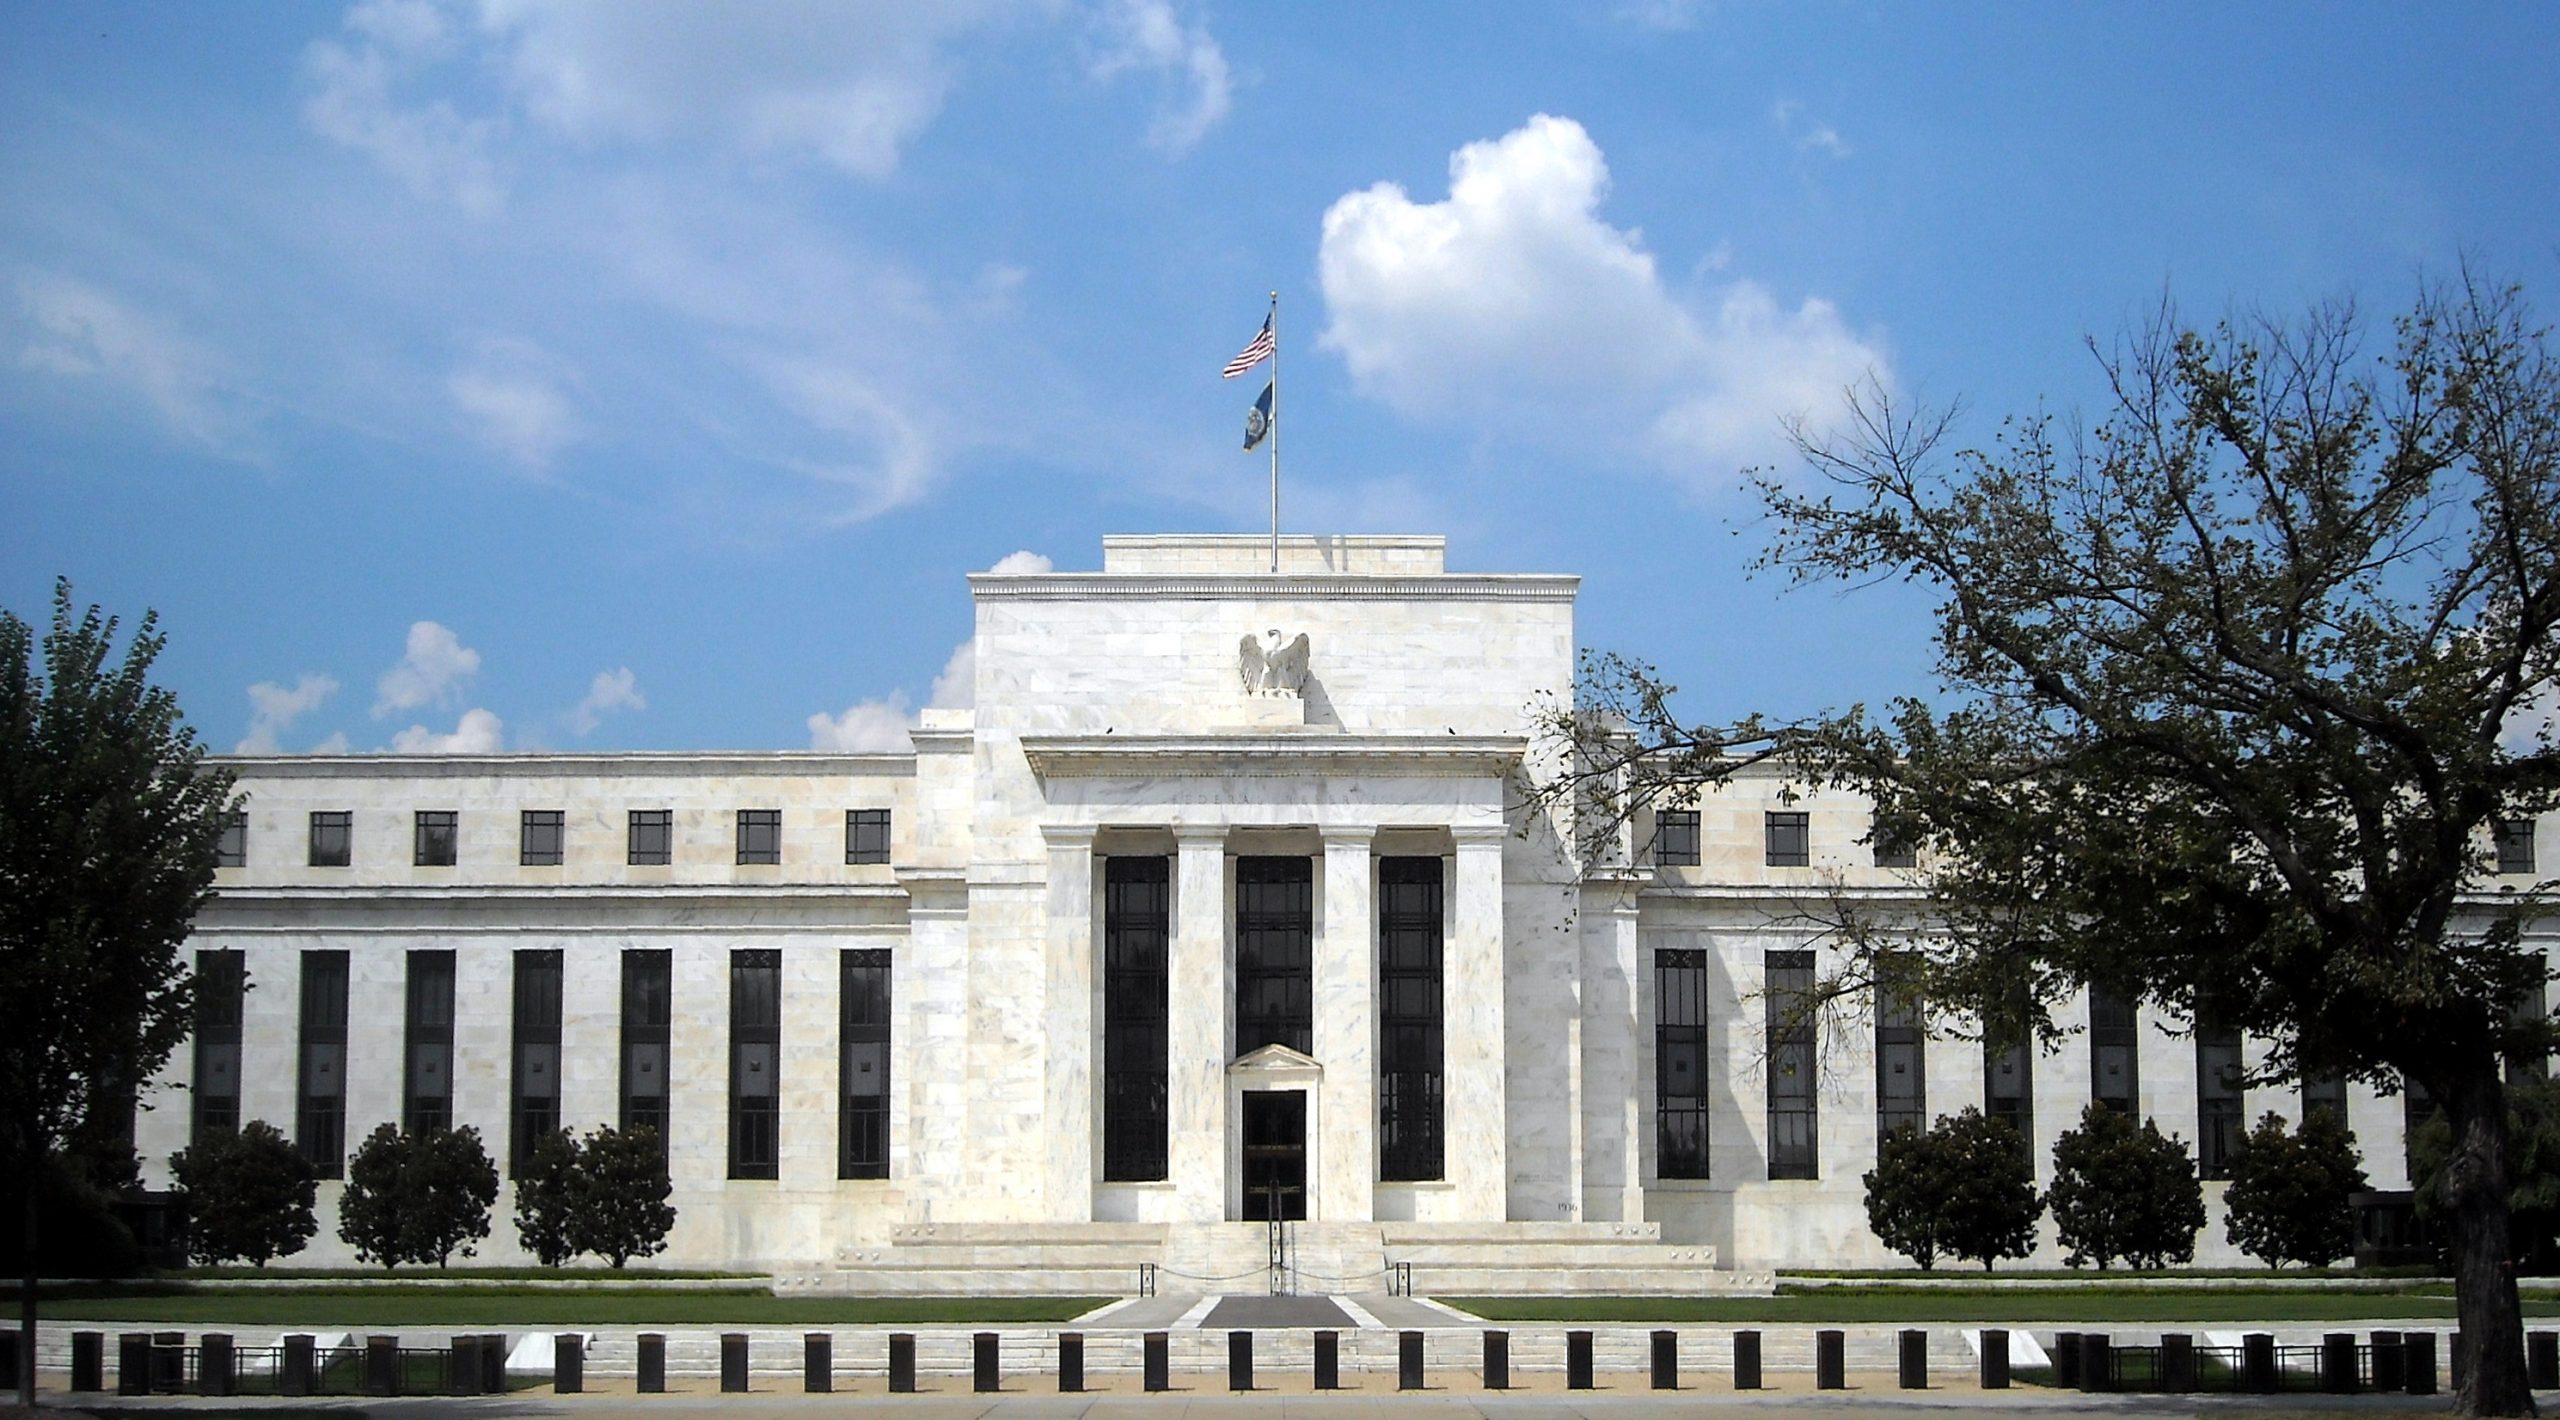 ΗΠΑ: Ανοικτή σε νέες αυξήσεις επιτοκίων η Fed - Ανησυχεί αλλά... ελπίζει για τον πληθωρισμό